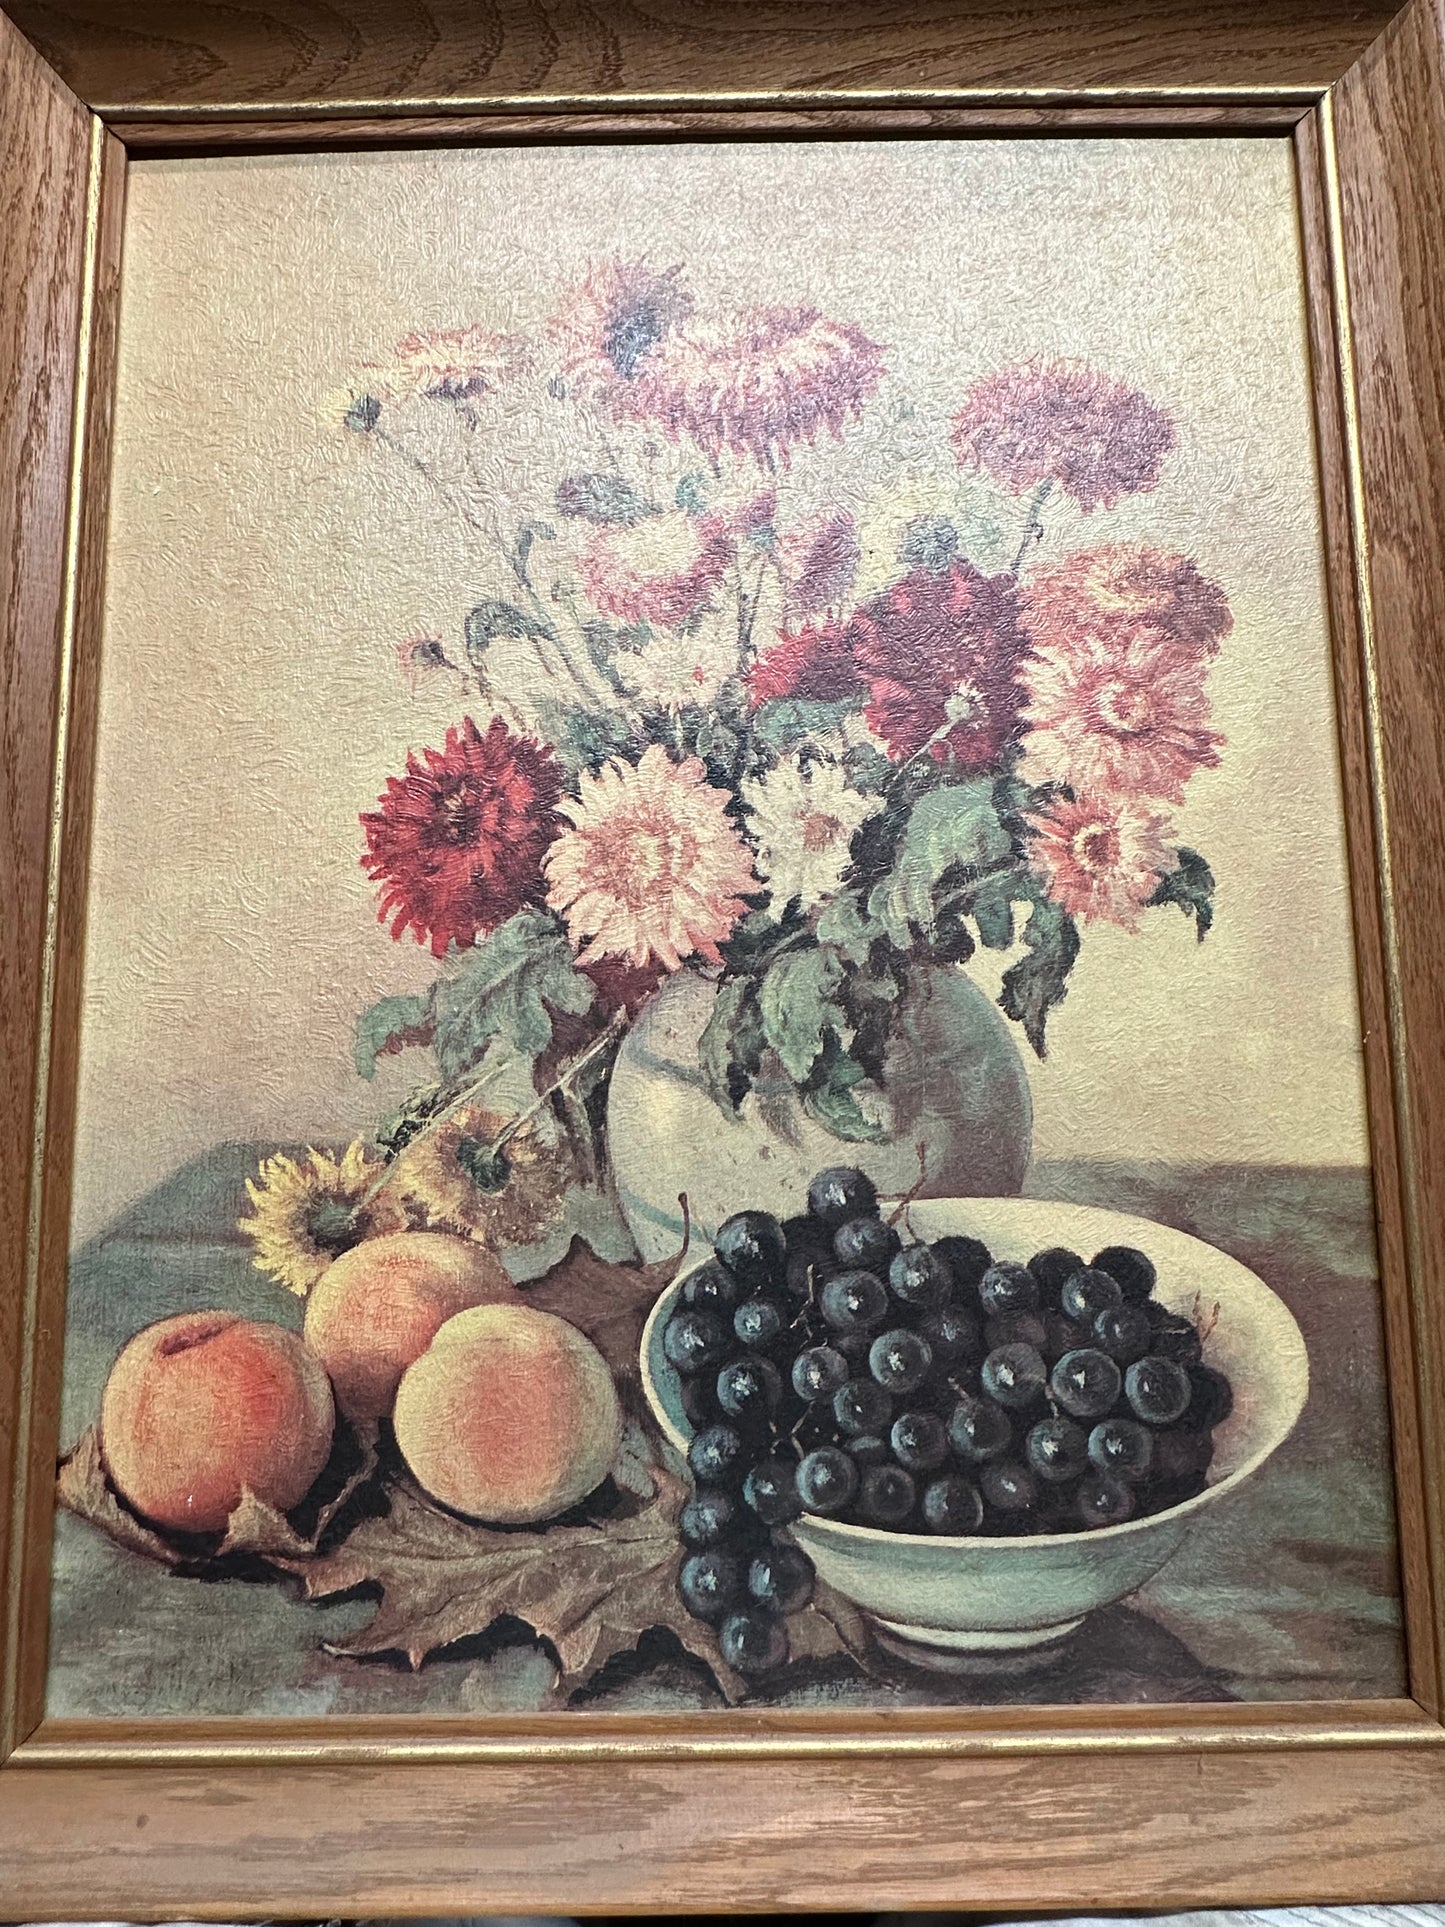 Vintage Wood Carved Frame With Print of Flower Vase & Fruits, Hank B Signed/ Artist Signed Prints/ Framed Art/ Kitchen Floral Fruit Art